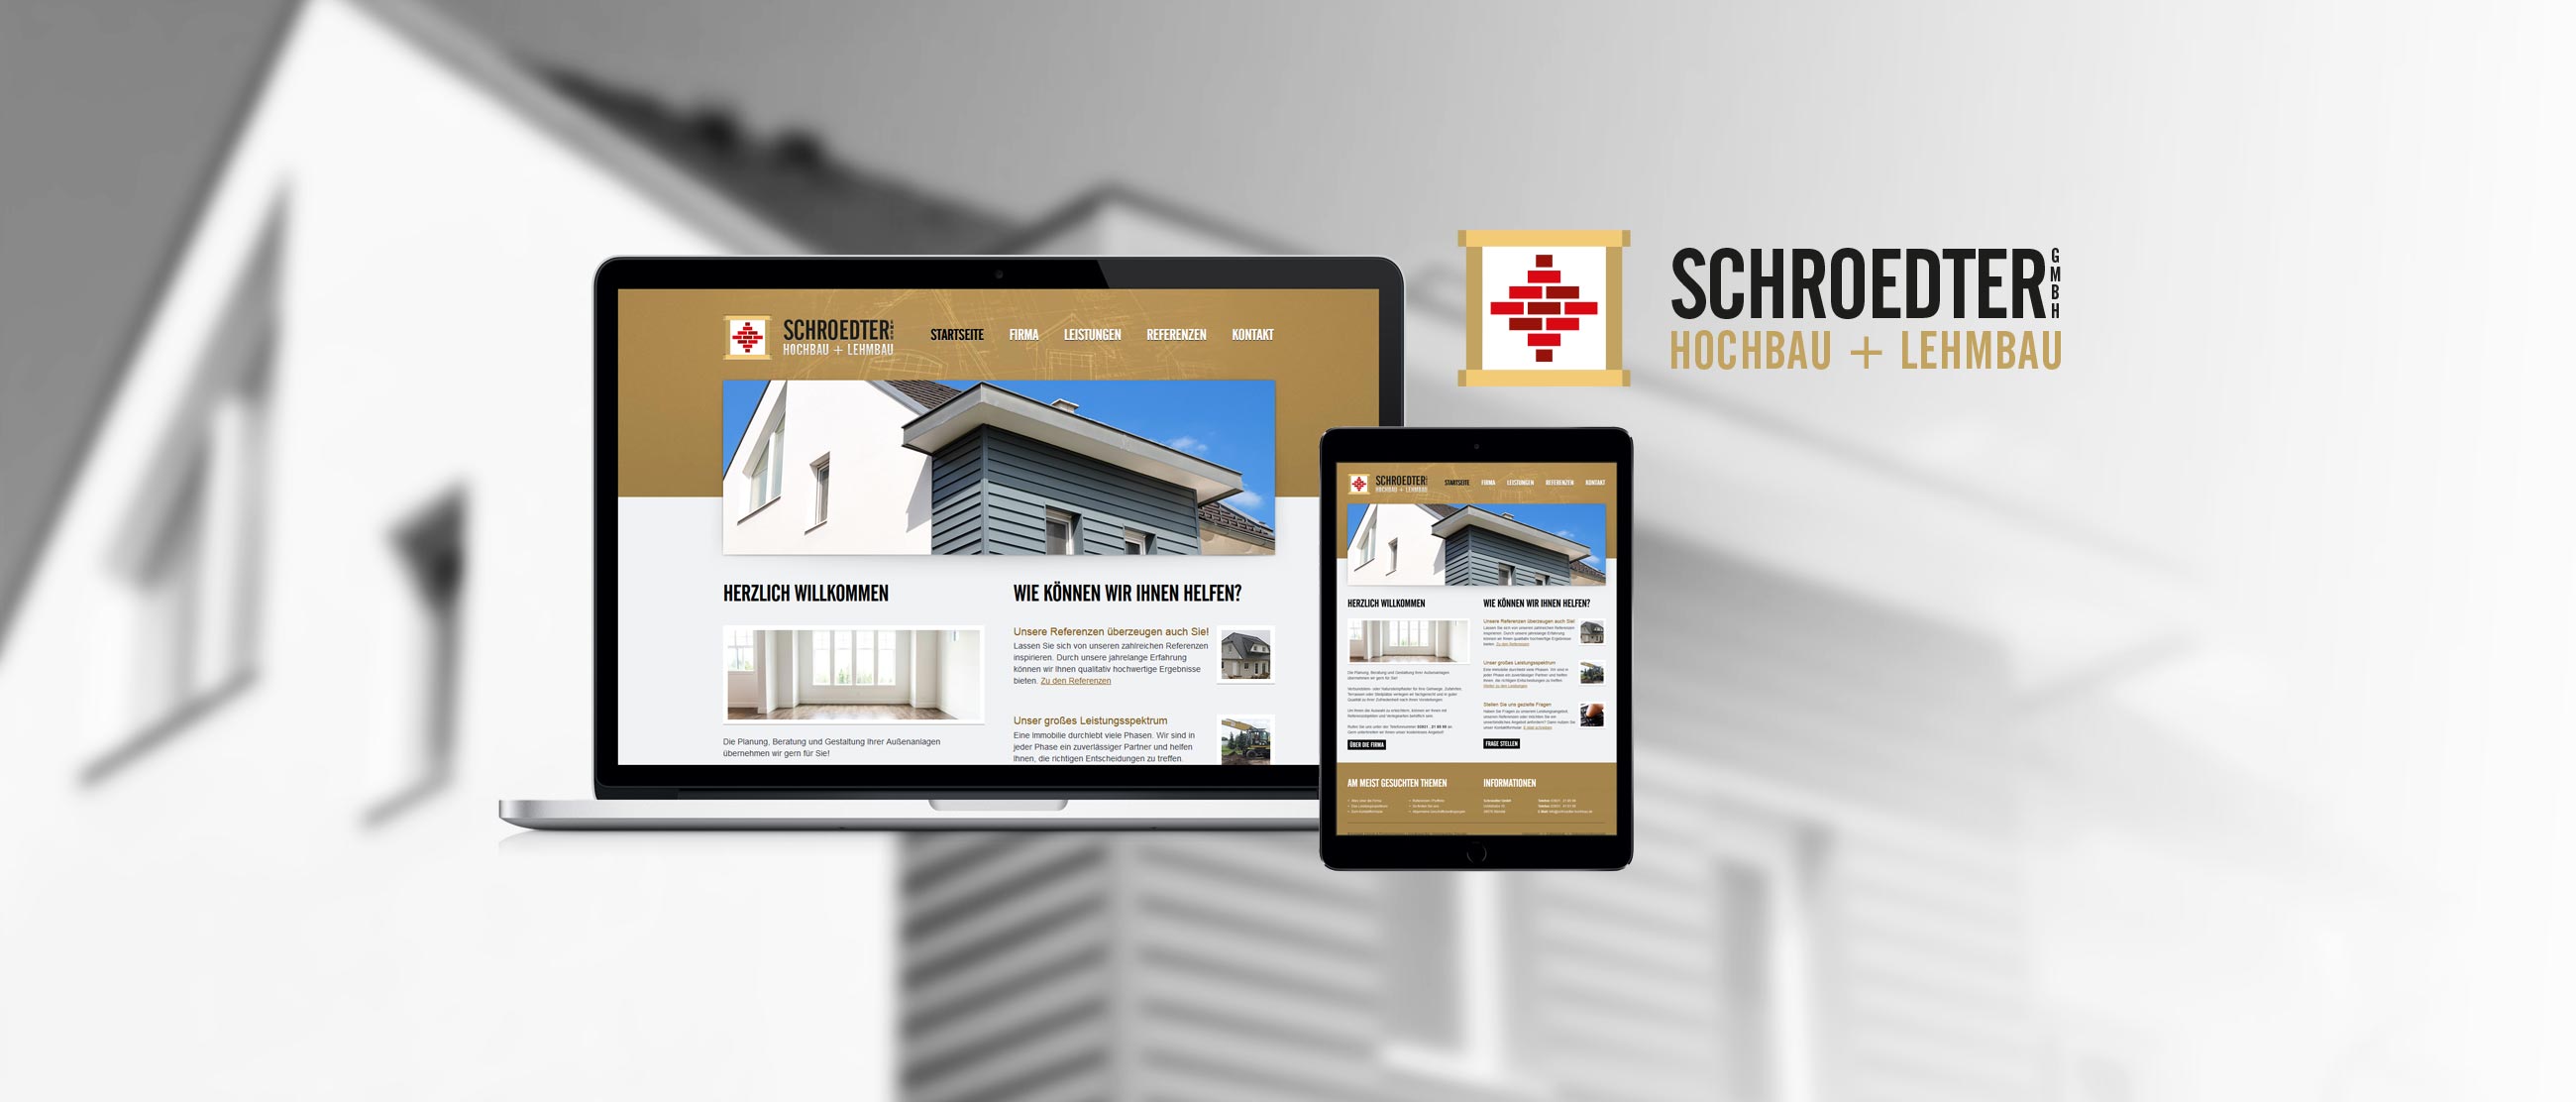 Schroedter Hochbau+Lehmbau: Web-Relaunch mit Erstellung eines Responsive Designs für www.schroedter-hochbau.de